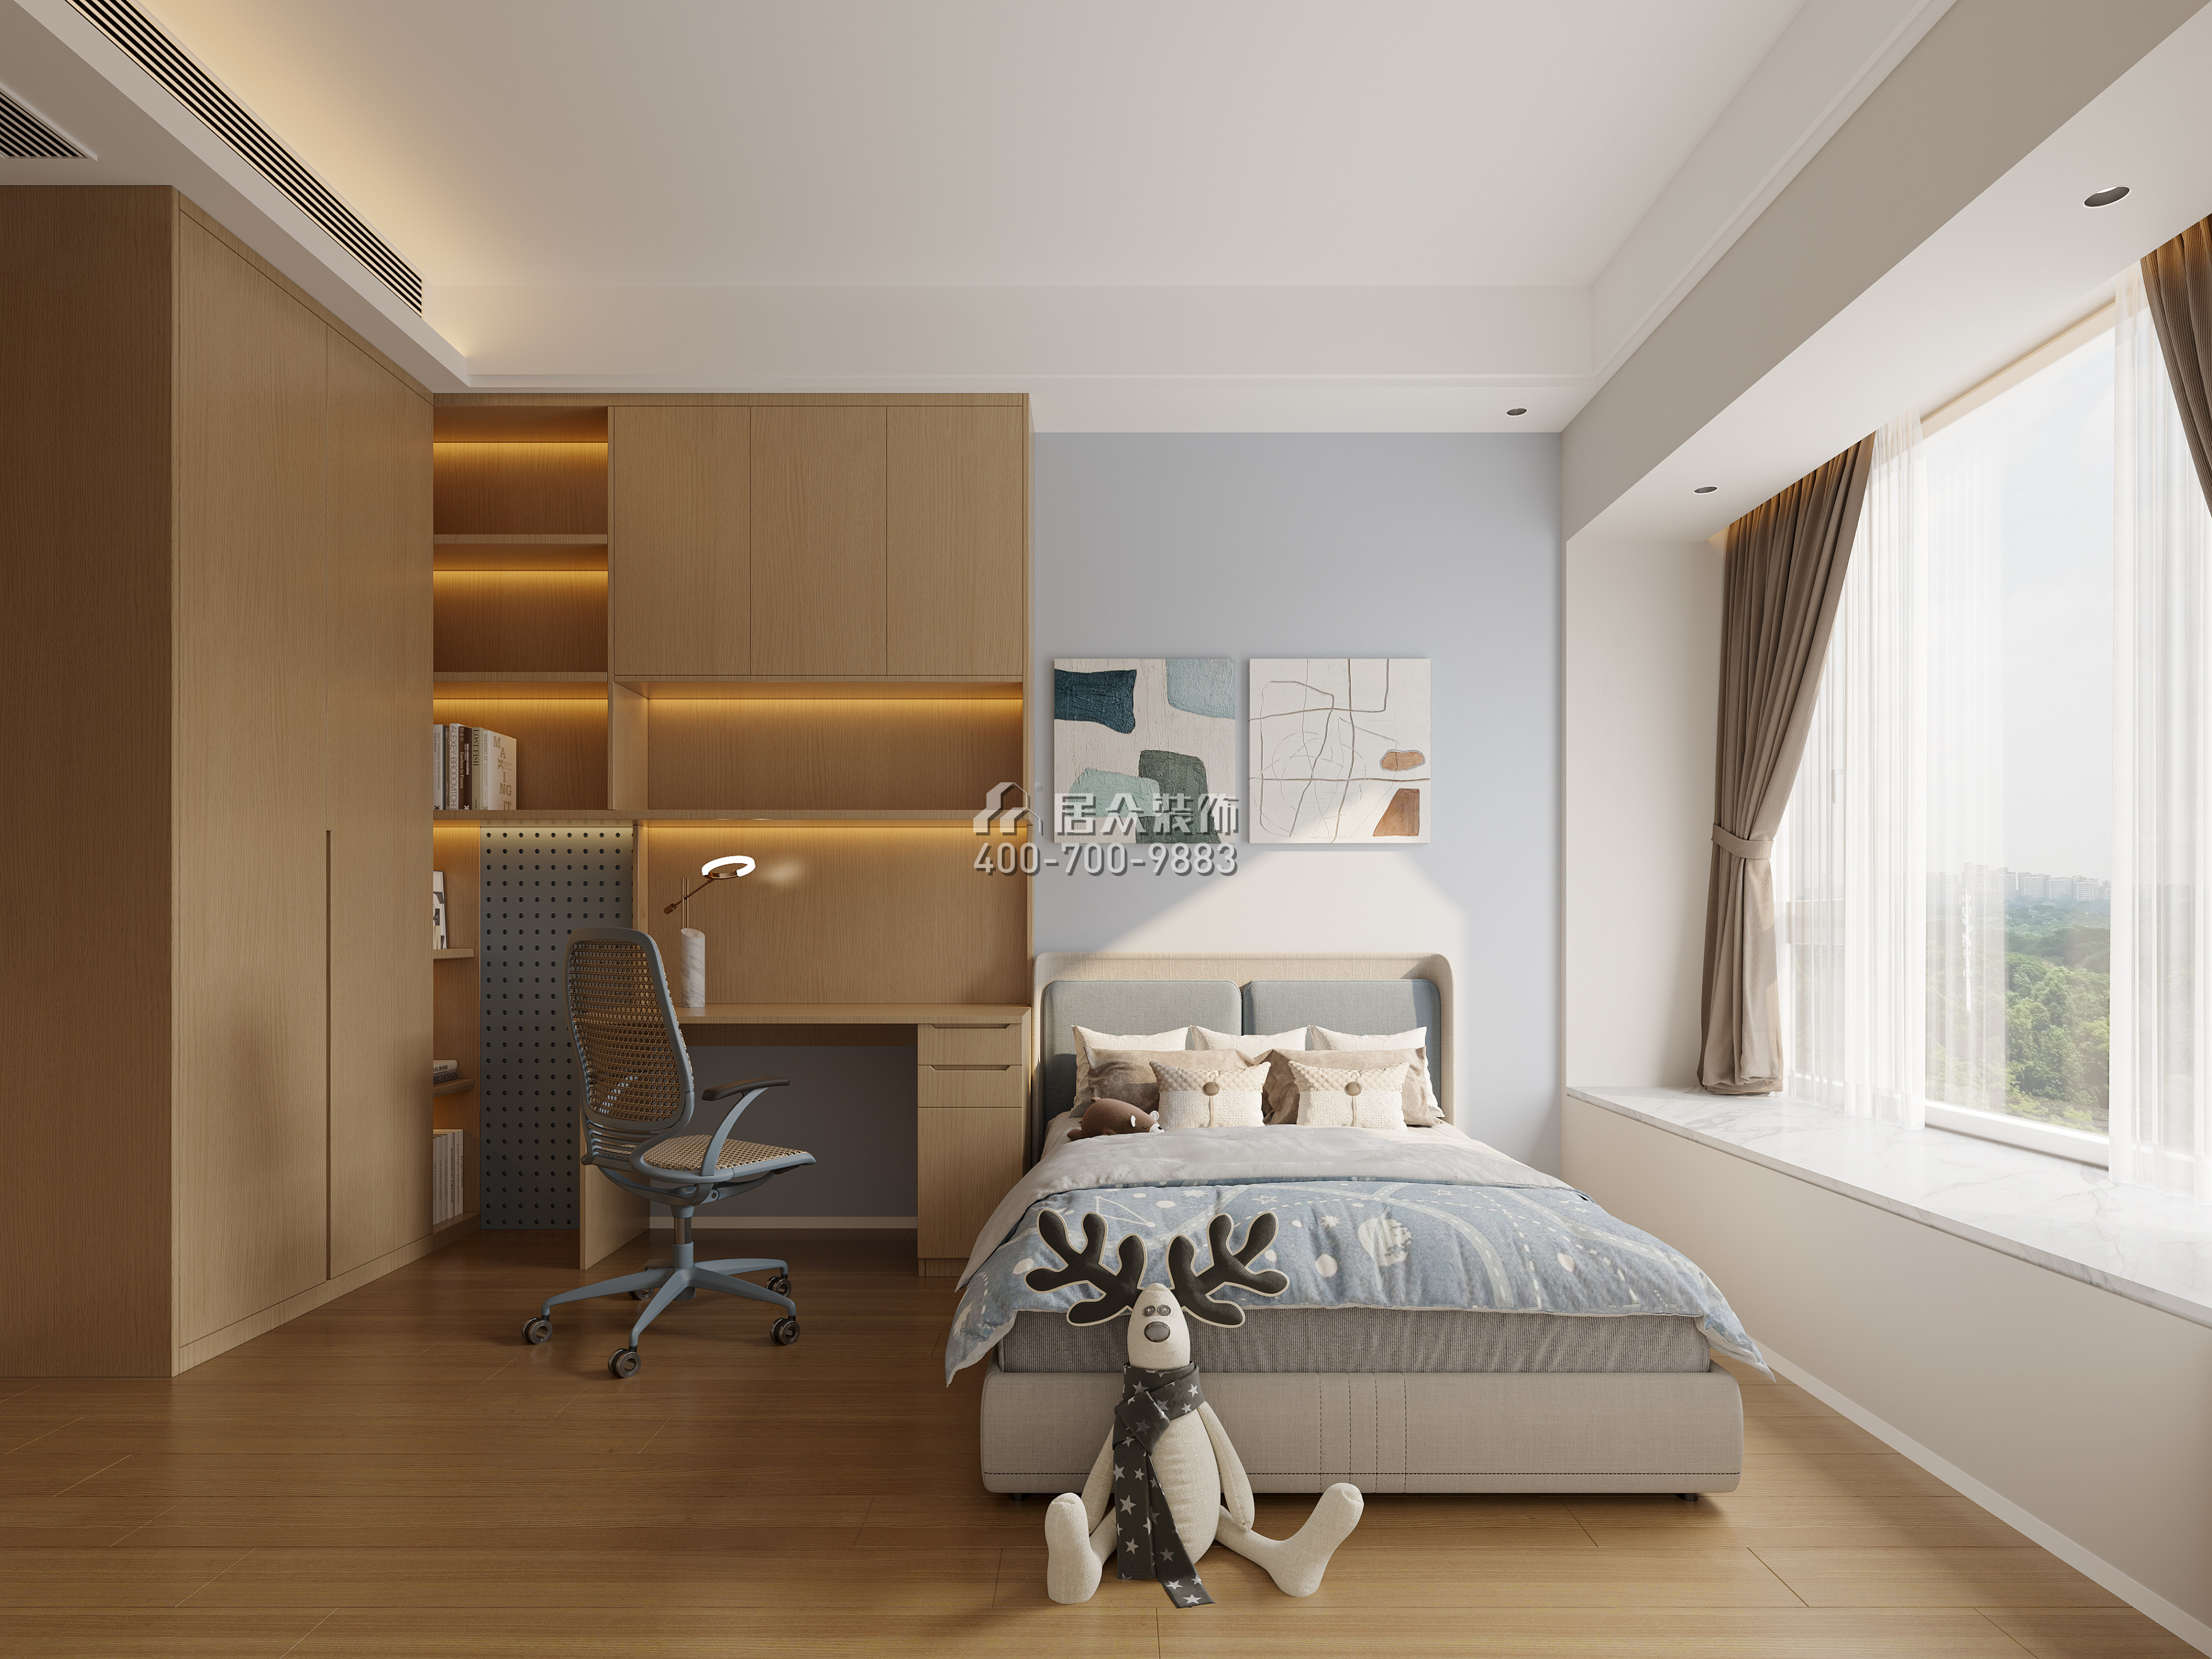 海印长城136平方米现代简约风格平层户型卧室装修效果图